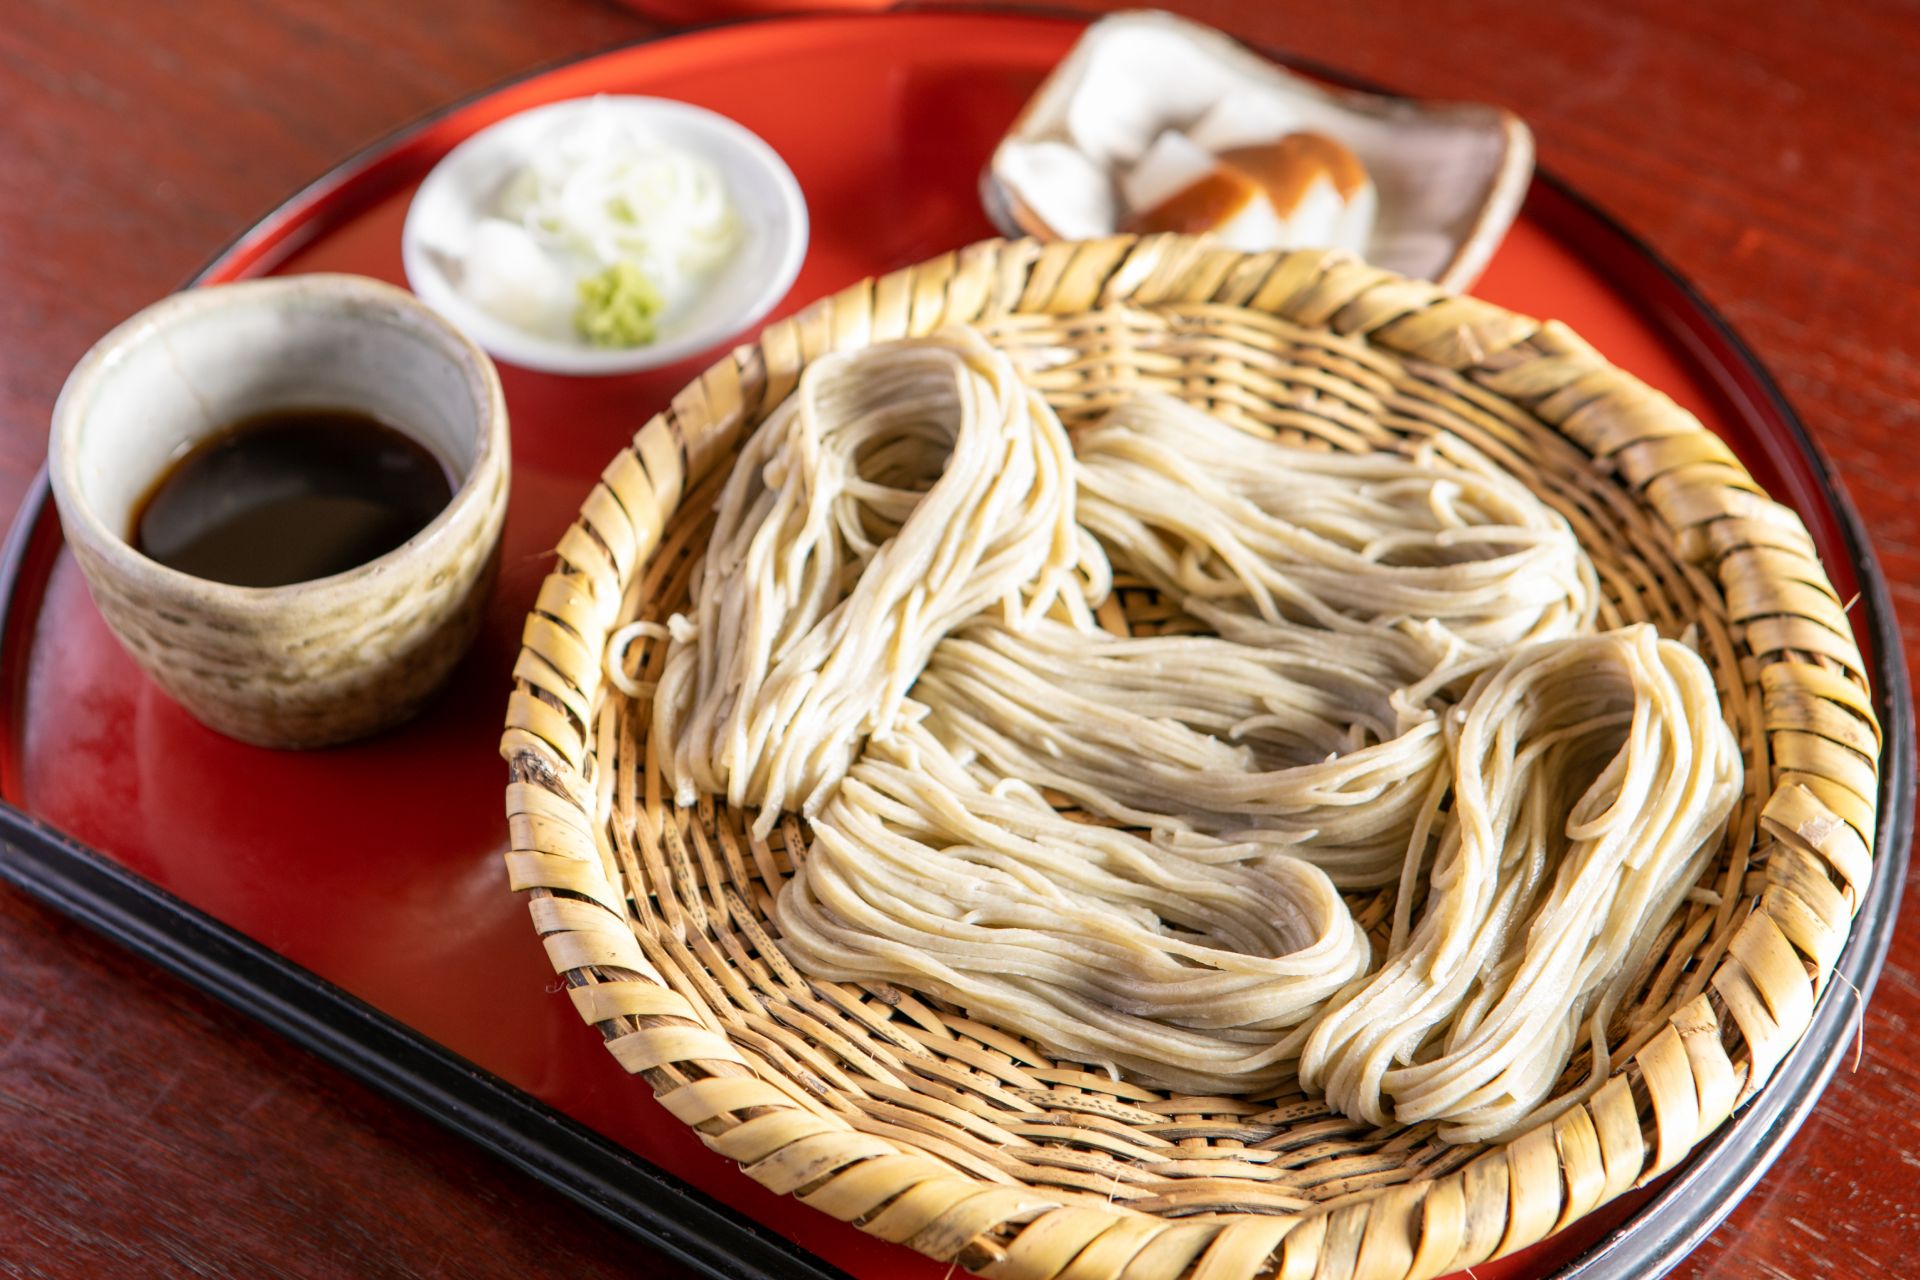 矢的庵では店主が修業した信州で採れた上質な蕎麦粉と本山葵を使用